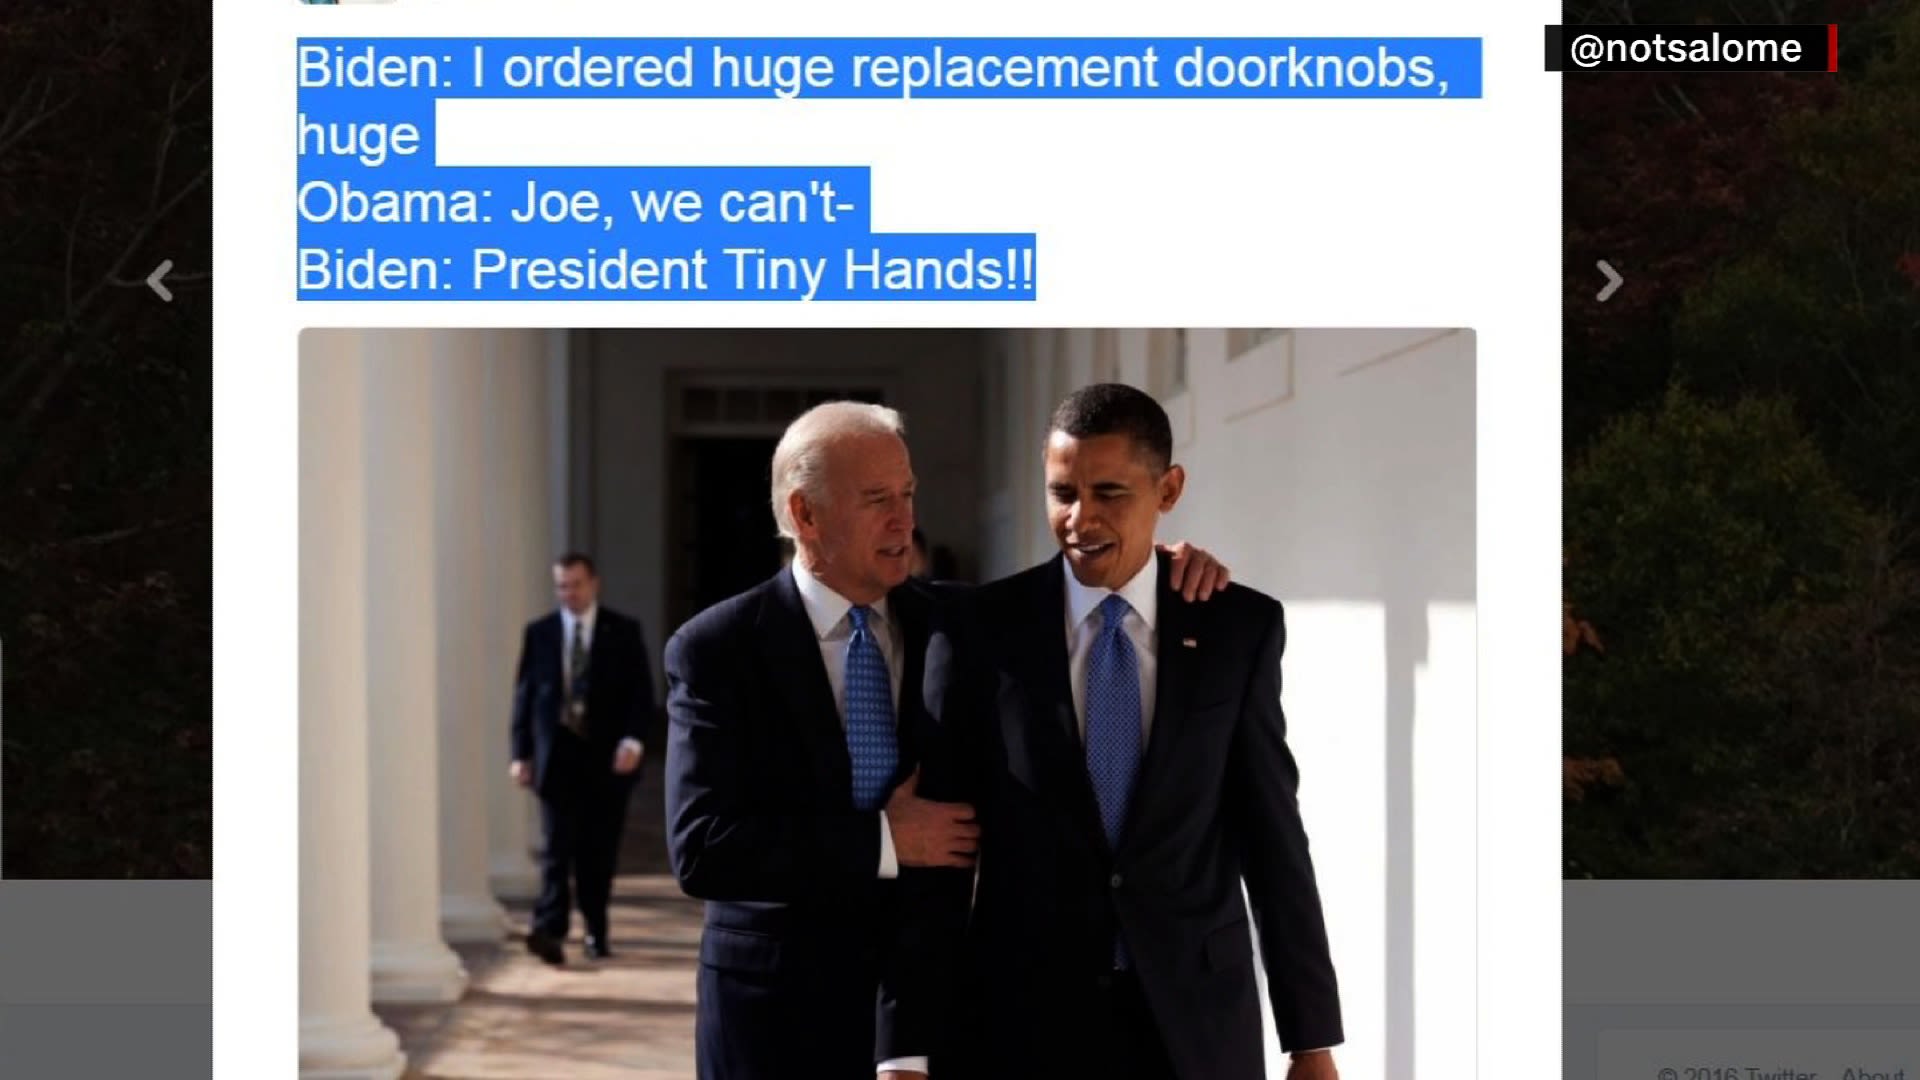 Bugt Bunke af side Joe Biden, President Obama memes take Internet by storm | CNN Politics